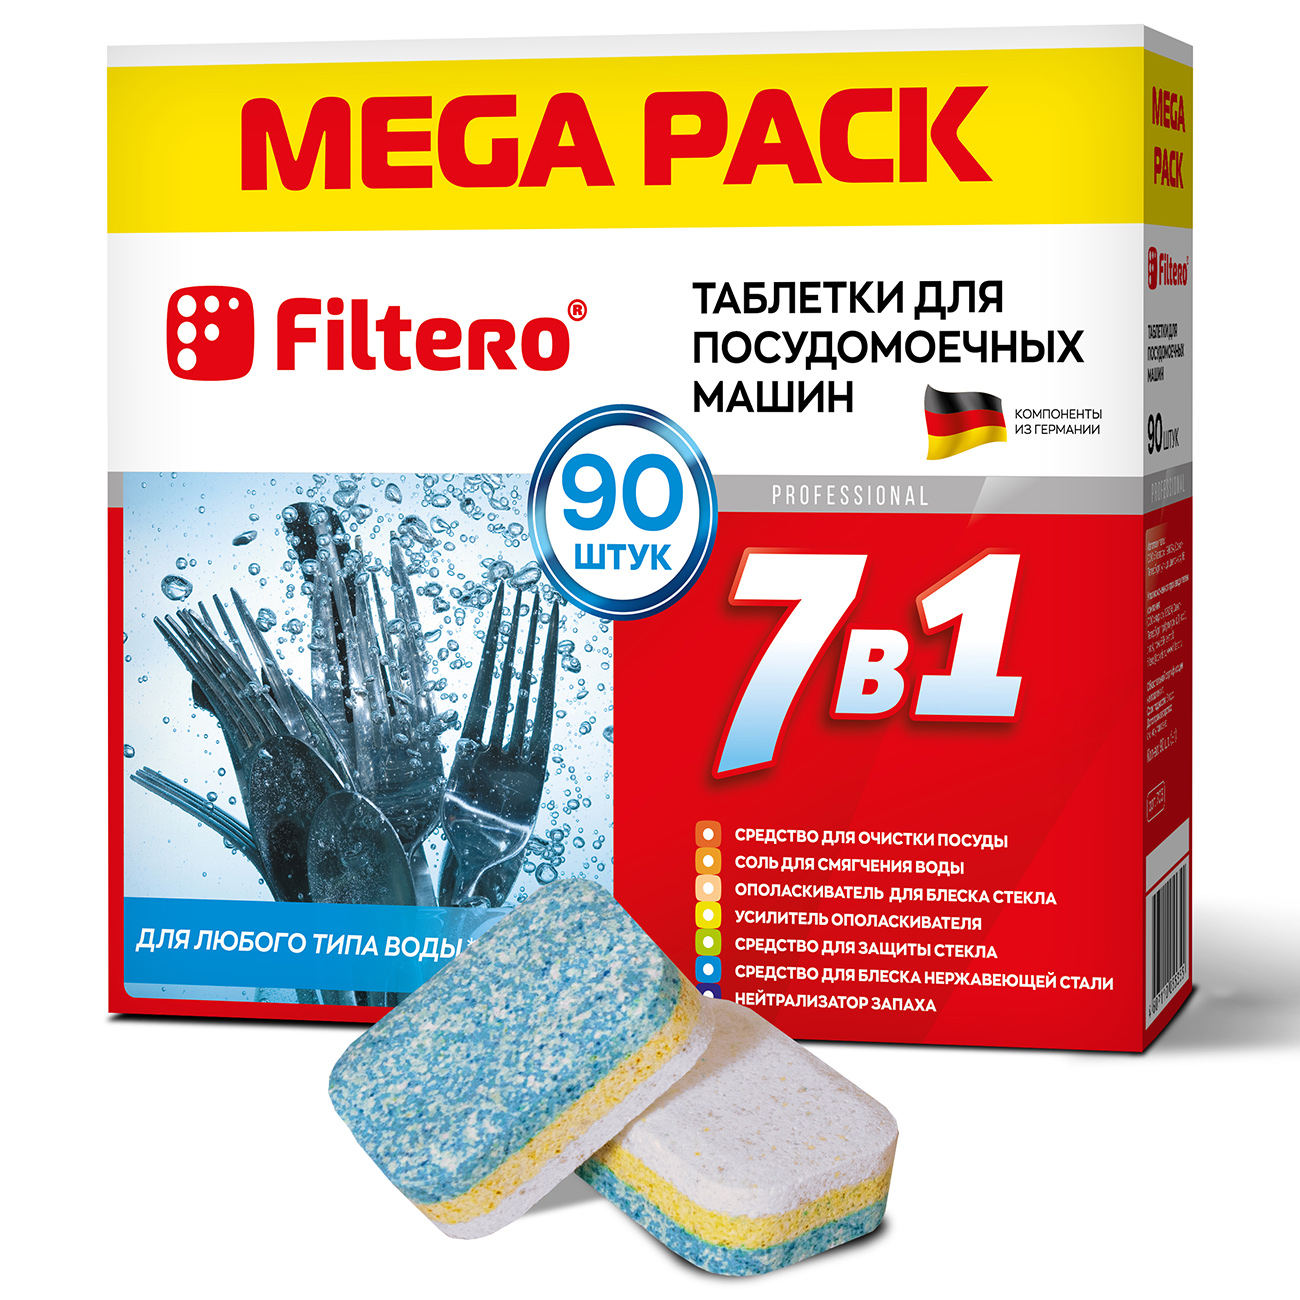 Таблетки Filtero для посудомоечной машины 7 в 1 90шт mega pack - фото 1